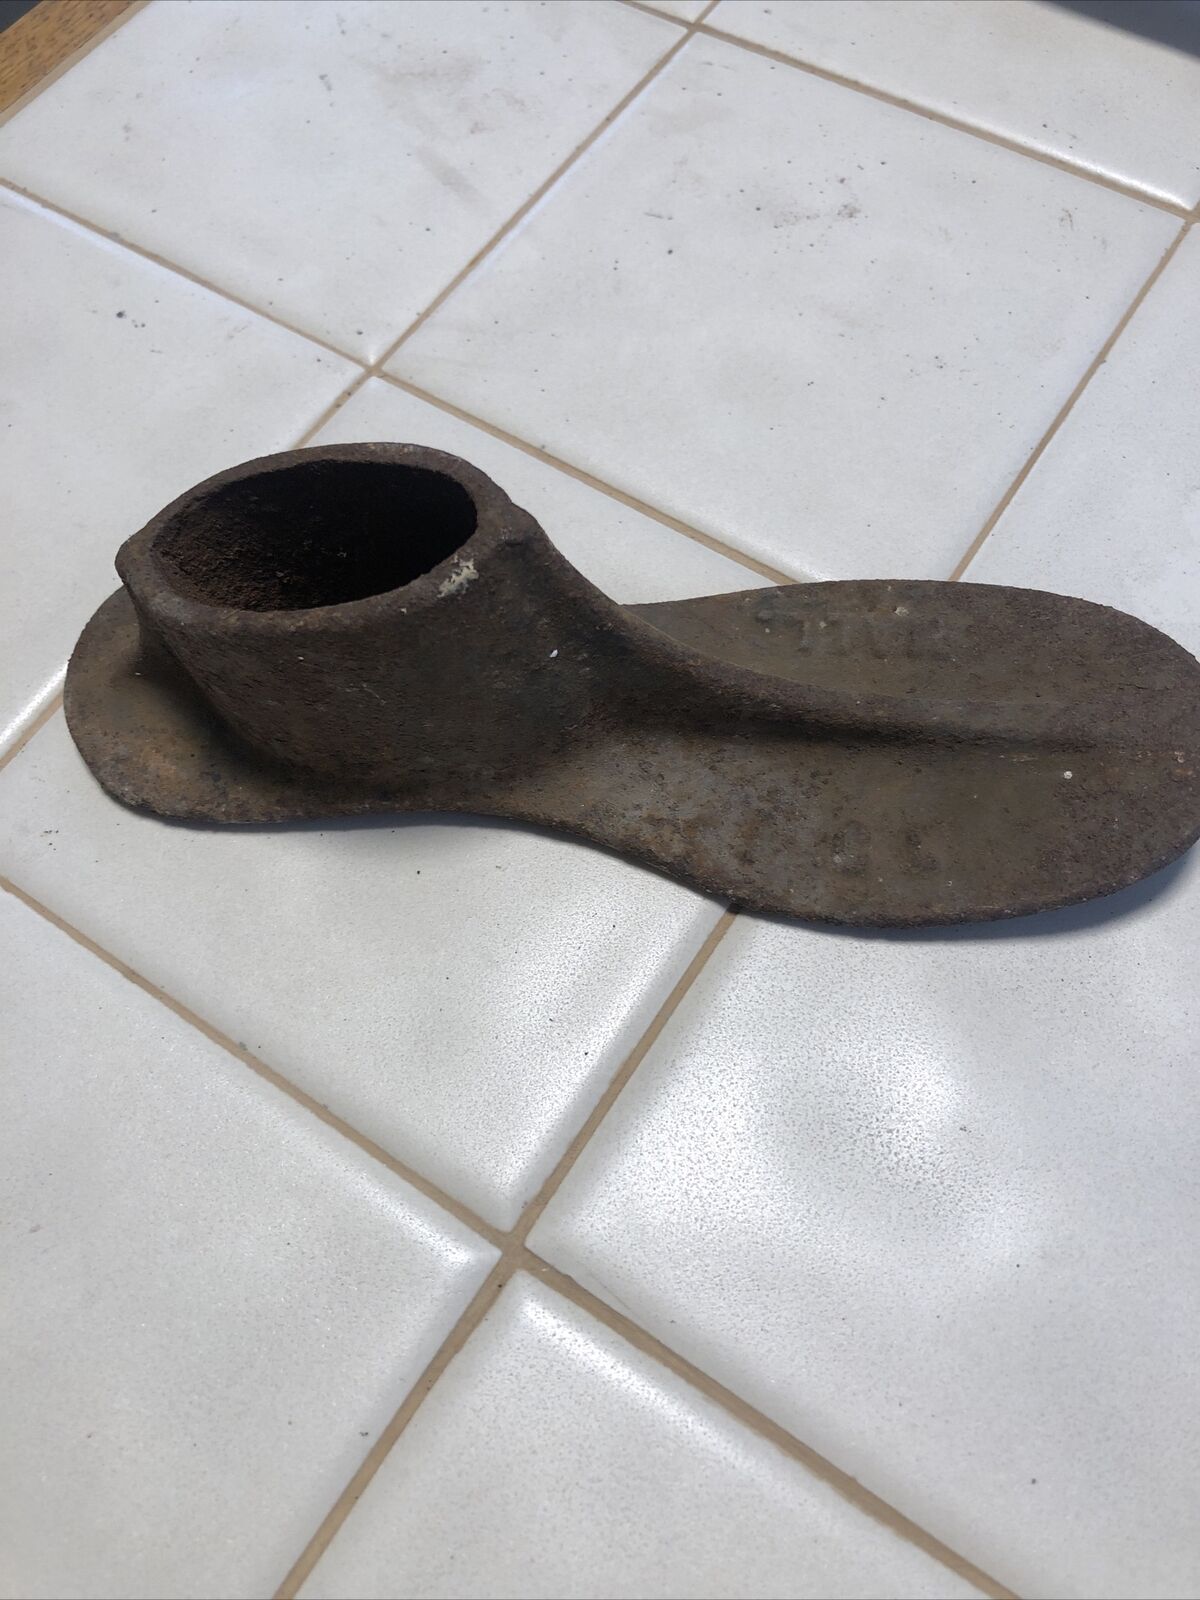 Antique Vintage Cast Iron Children’s Shoe Cobbler Rustic Charm Rare Collectible